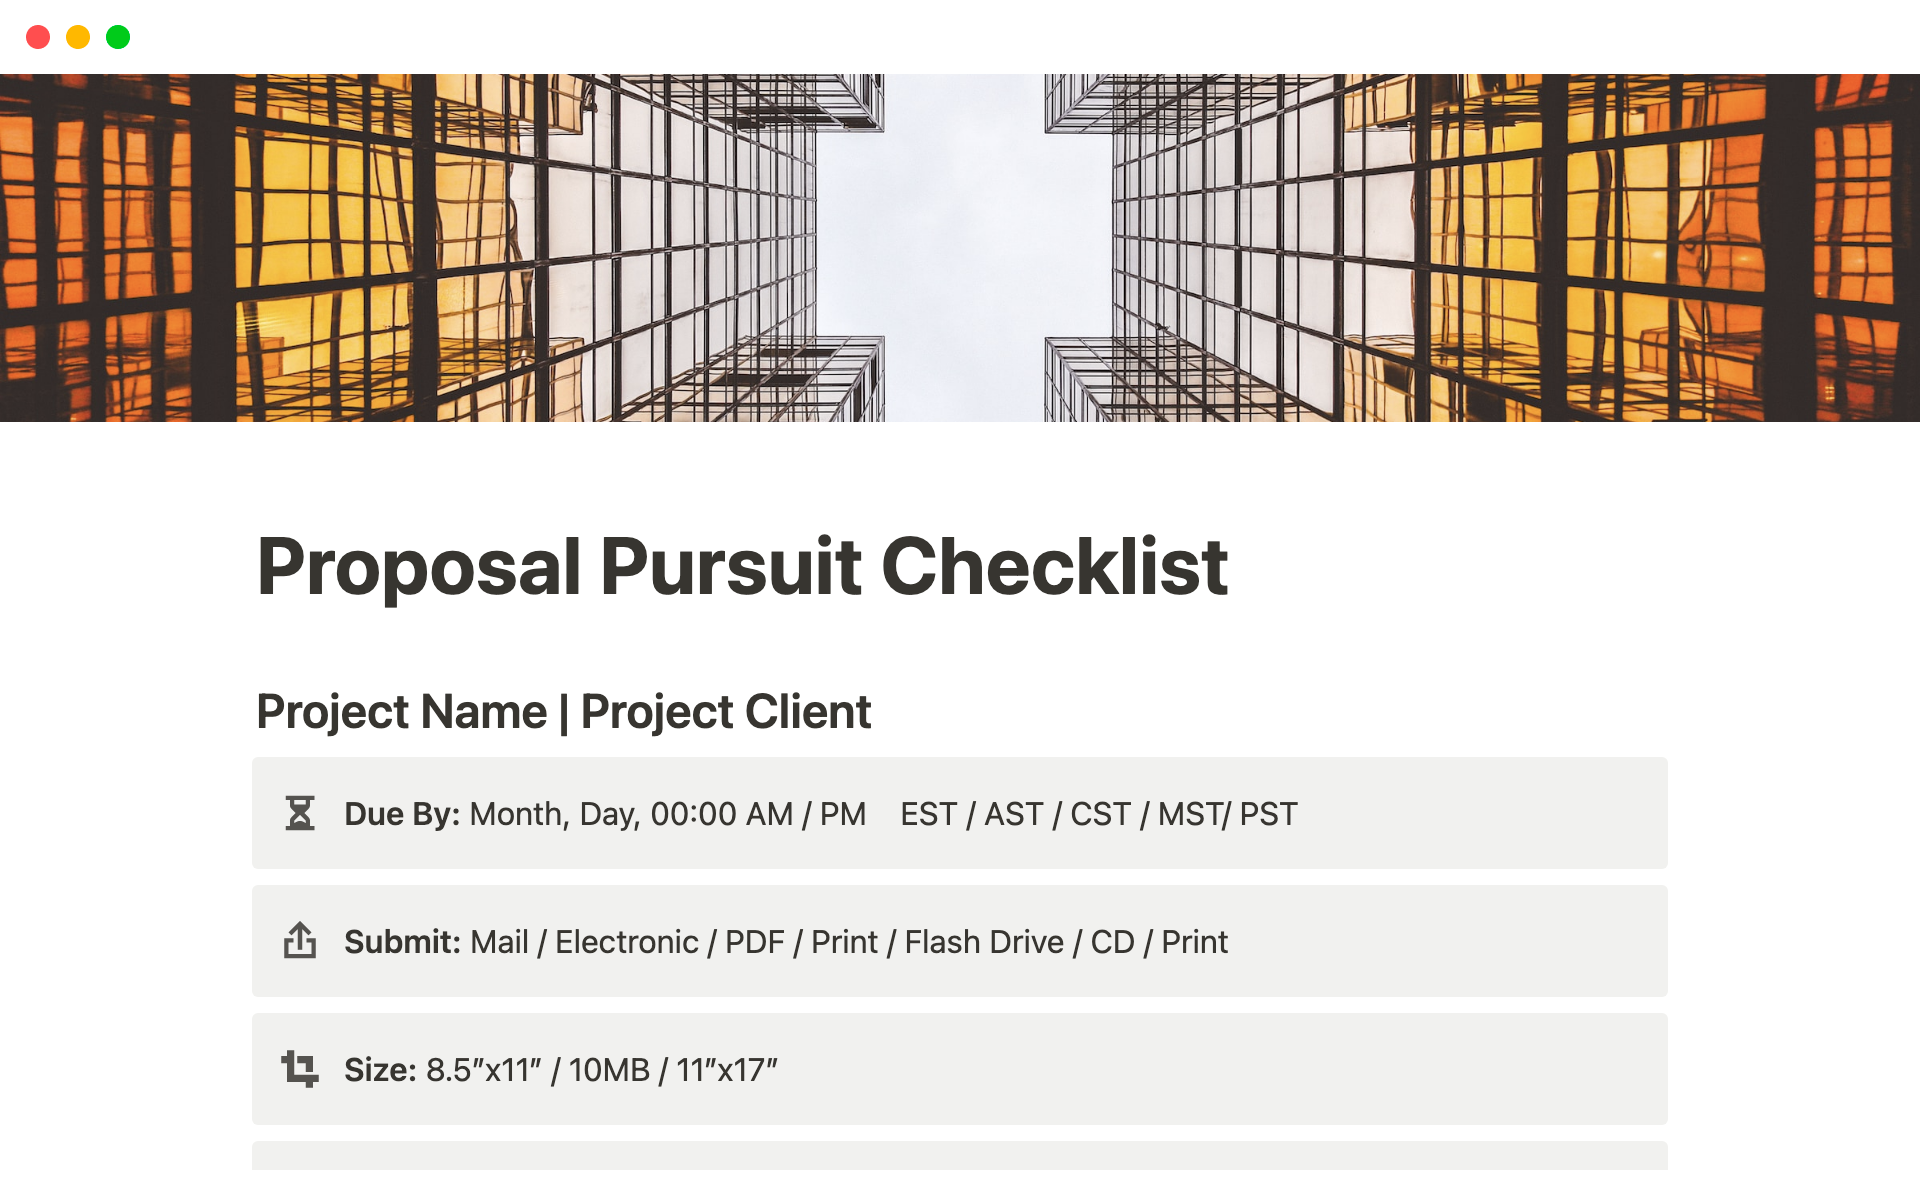 Uma prévia do modelo para Proposal Pursuit Checklist